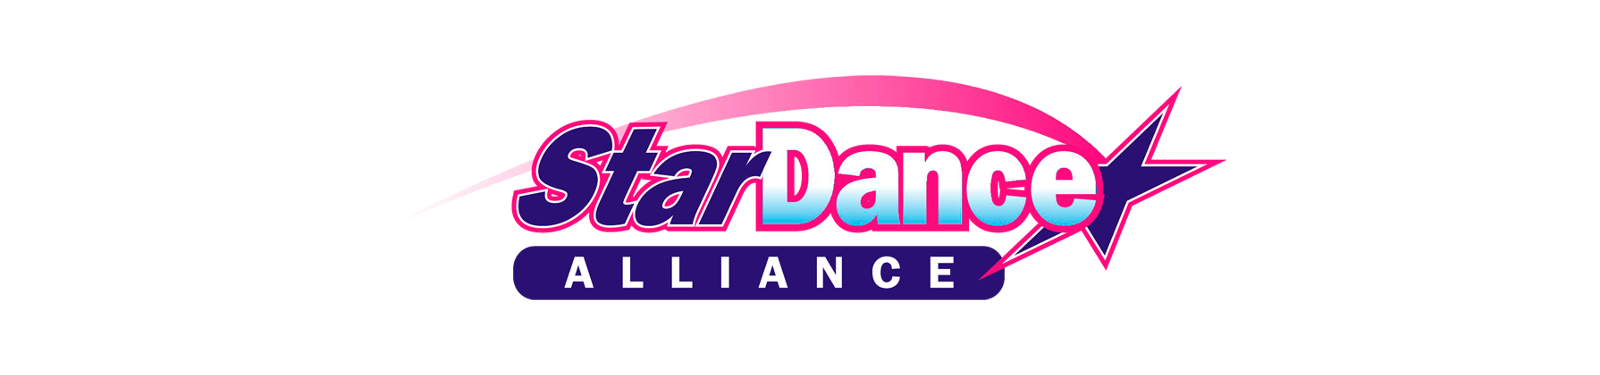 Star Dance Alliance